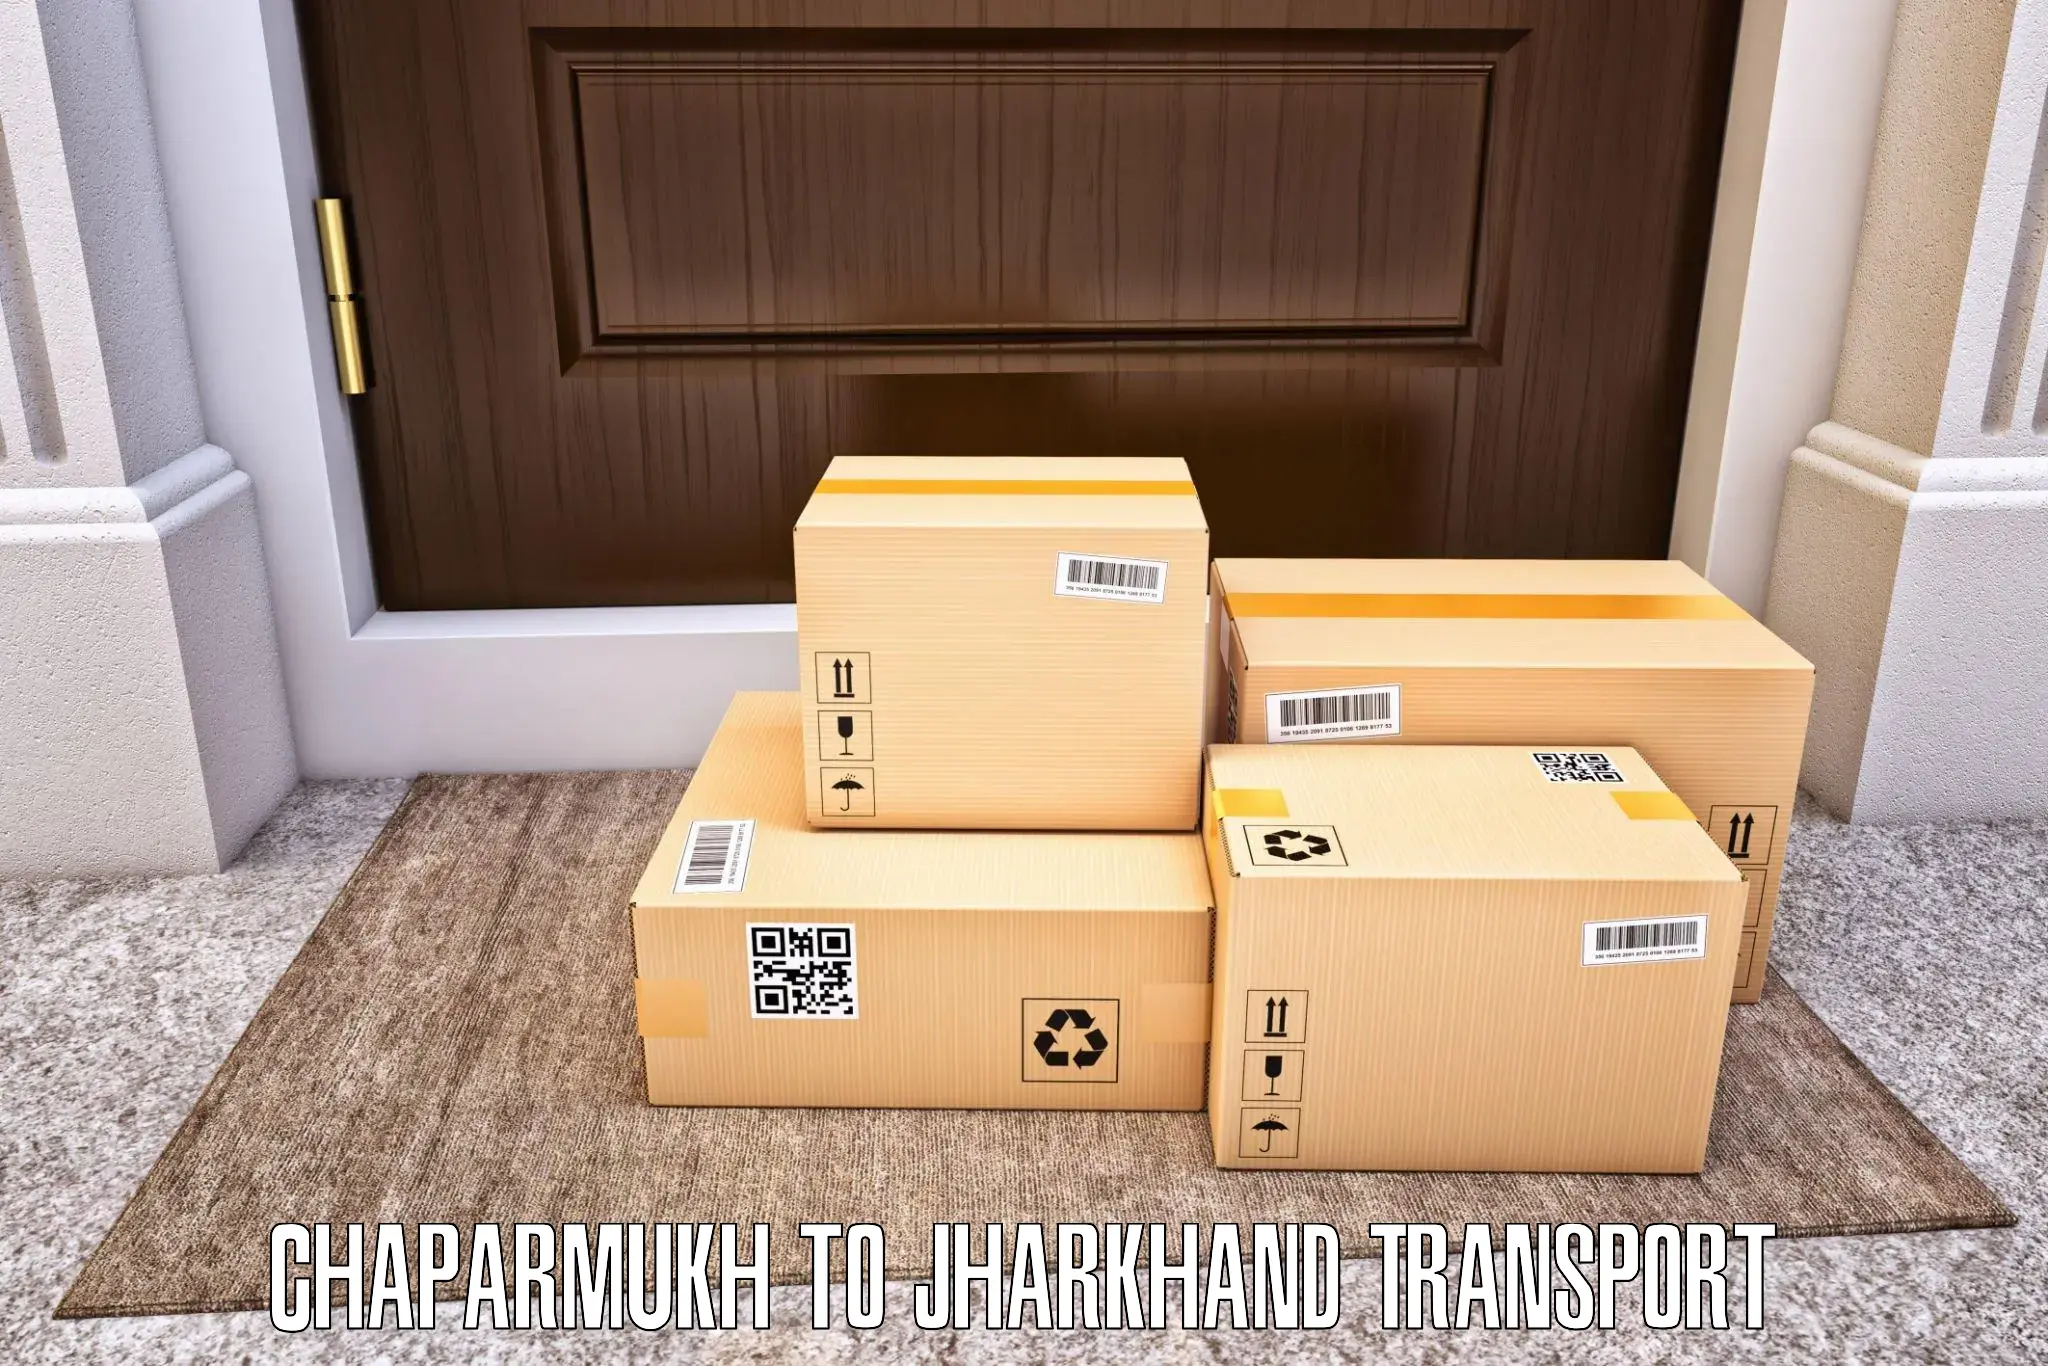 Furniture transport service Chaparmukh to Bokaro